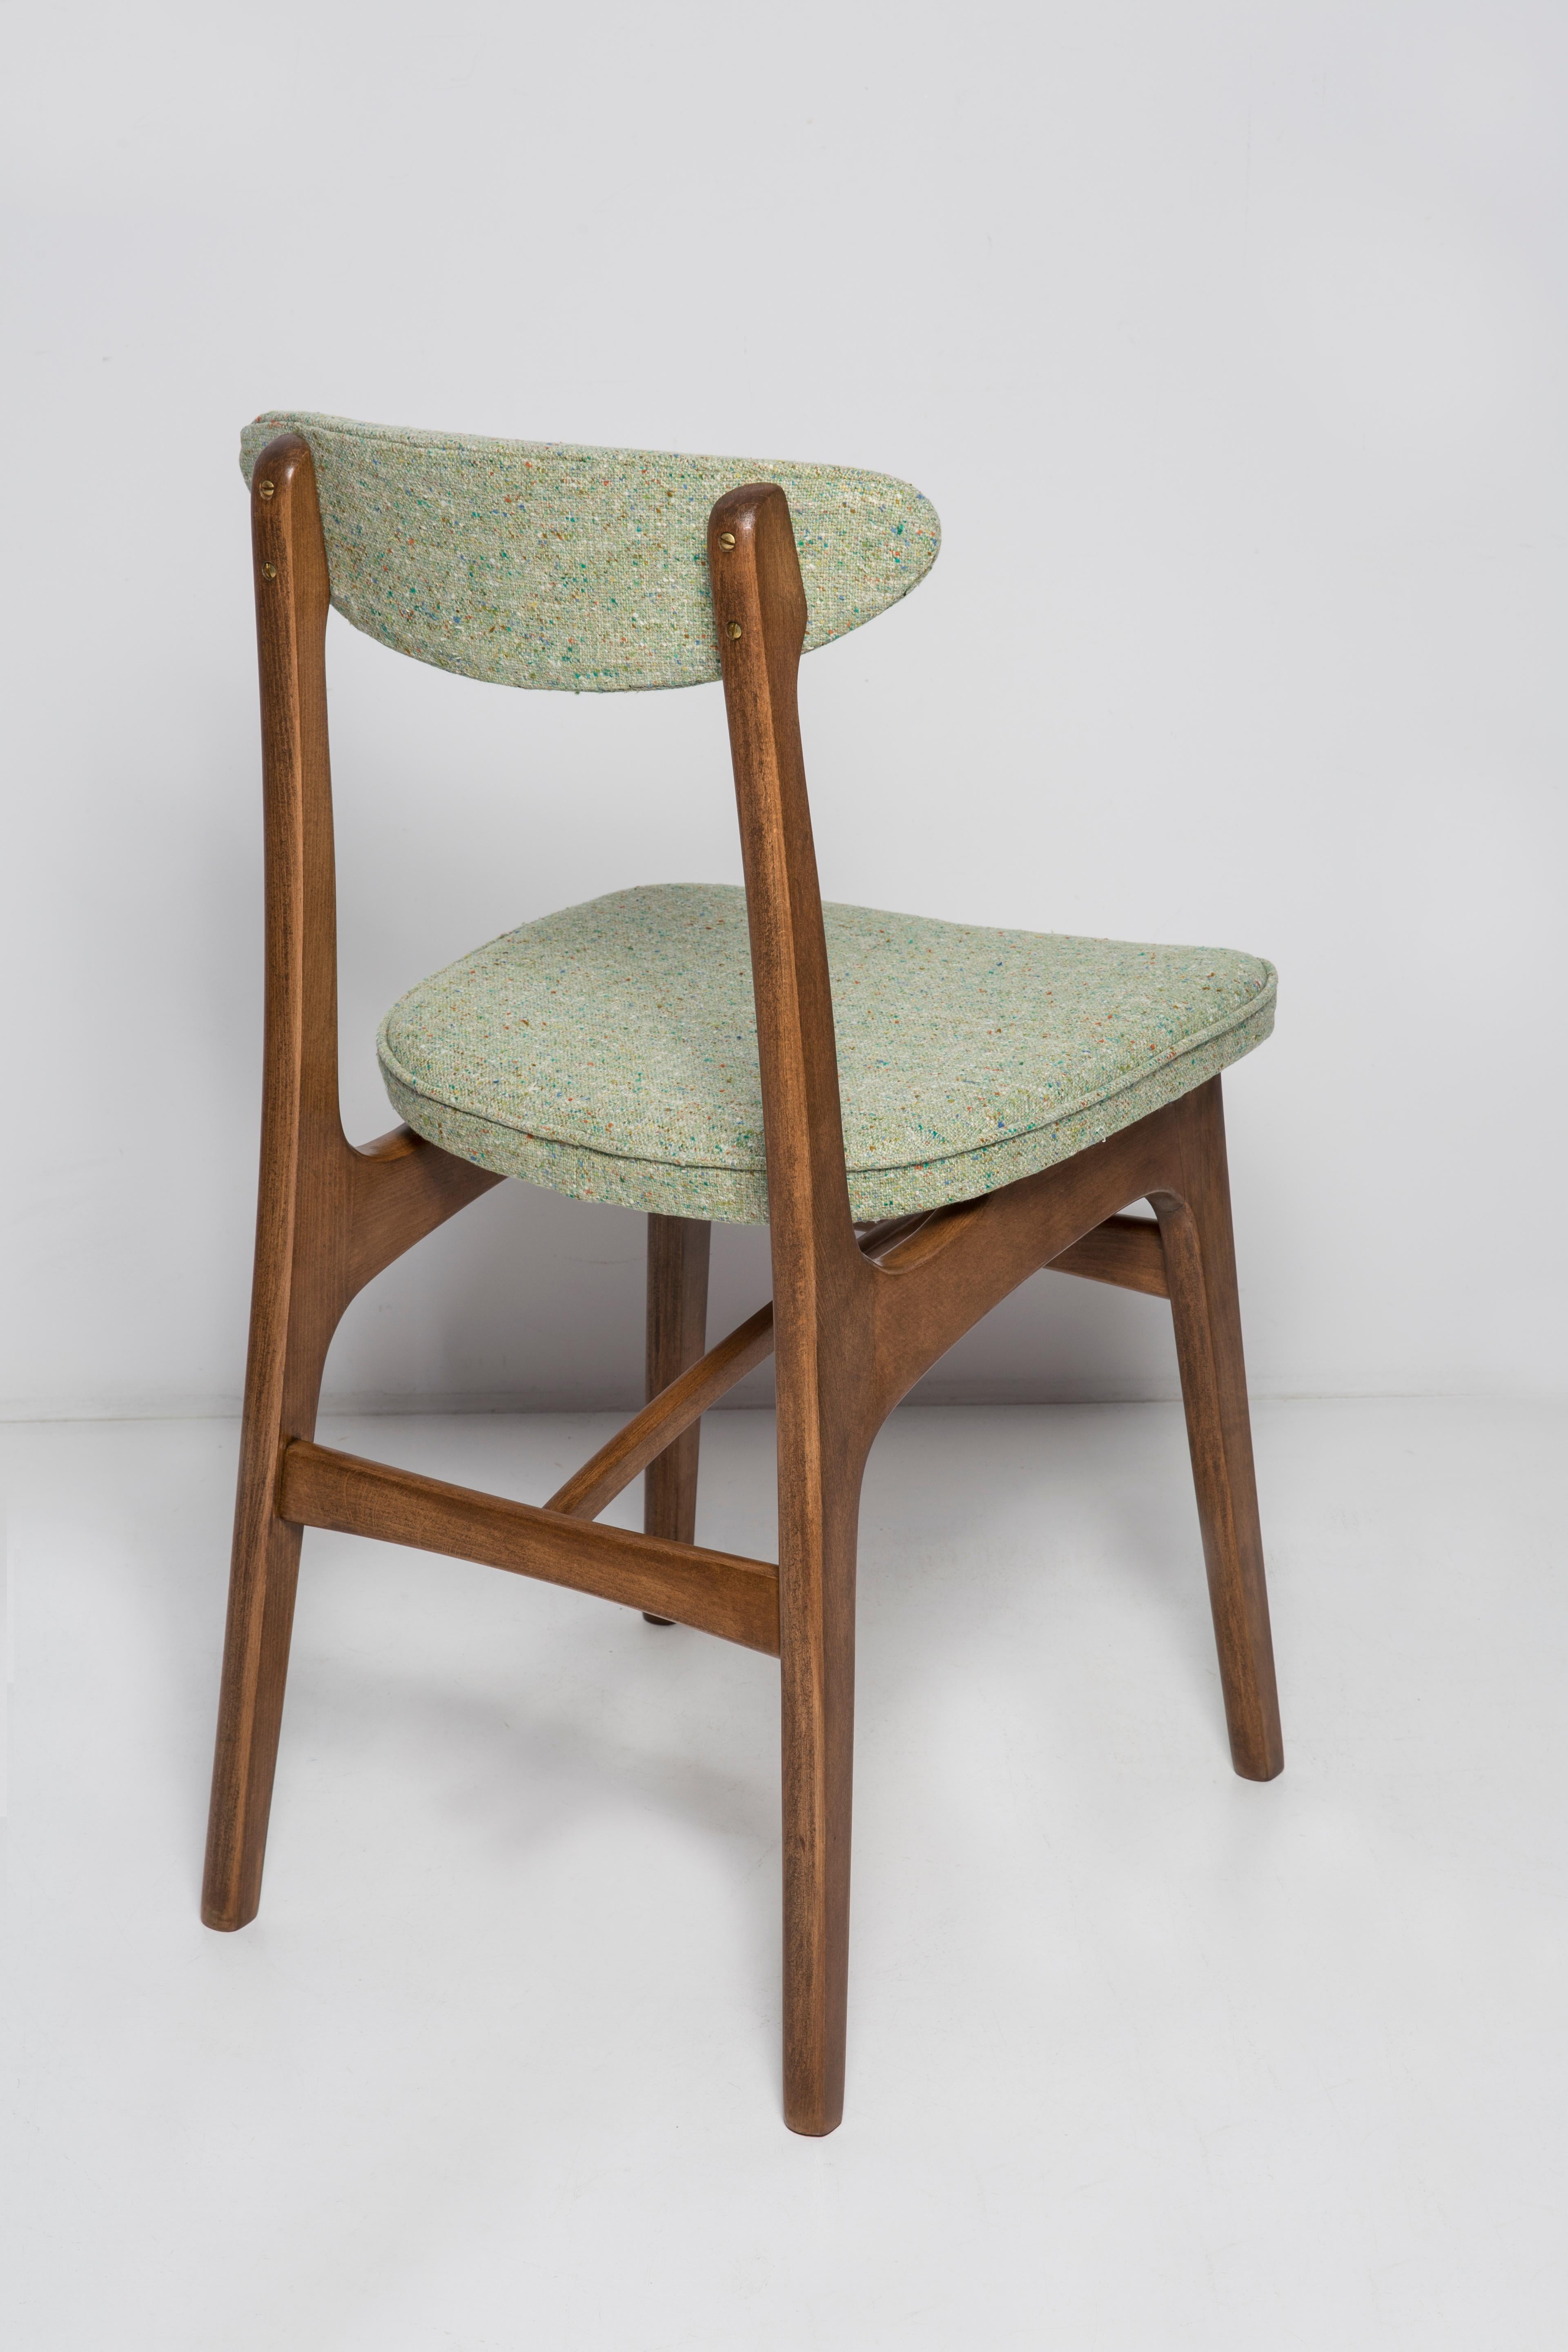 Twelve Mid Century Green Wool Chairs, Walnut Wood, Rajmund Halas, Poland, 1960s In Excellent Condition For Sale In 05-080 Hornowek, PL